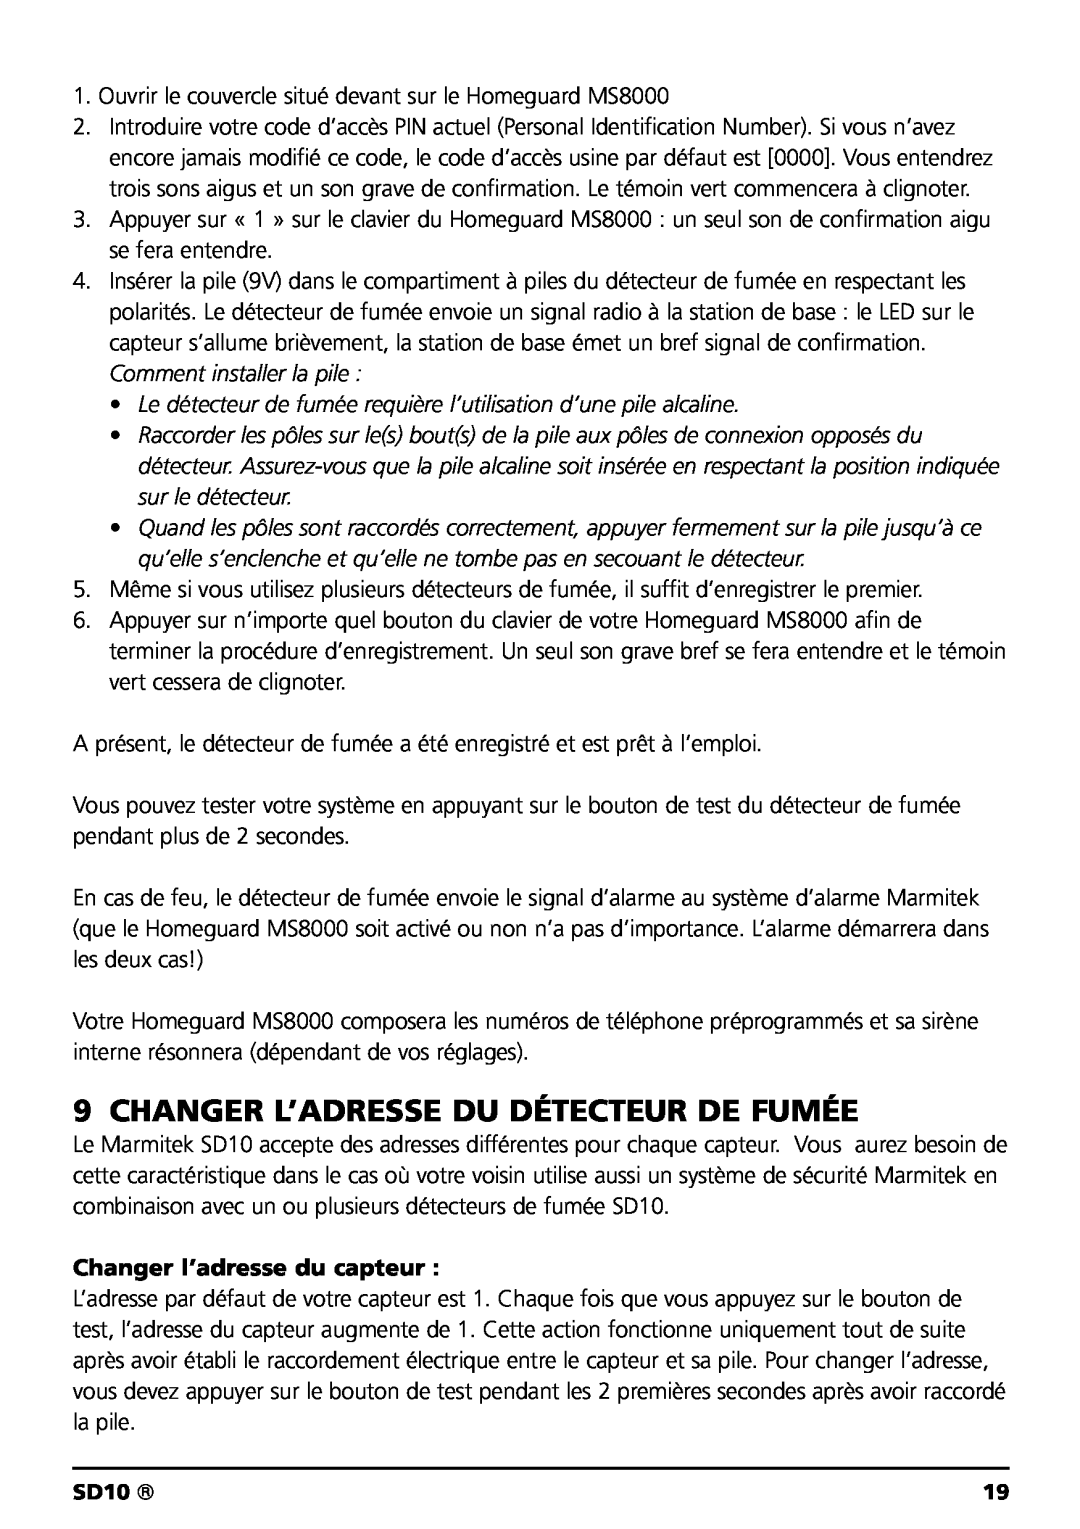 Marmitek SD10 owner manual Changer L’Adresse Du Détecteur De Fumée, Changer l’adresse du capteur 